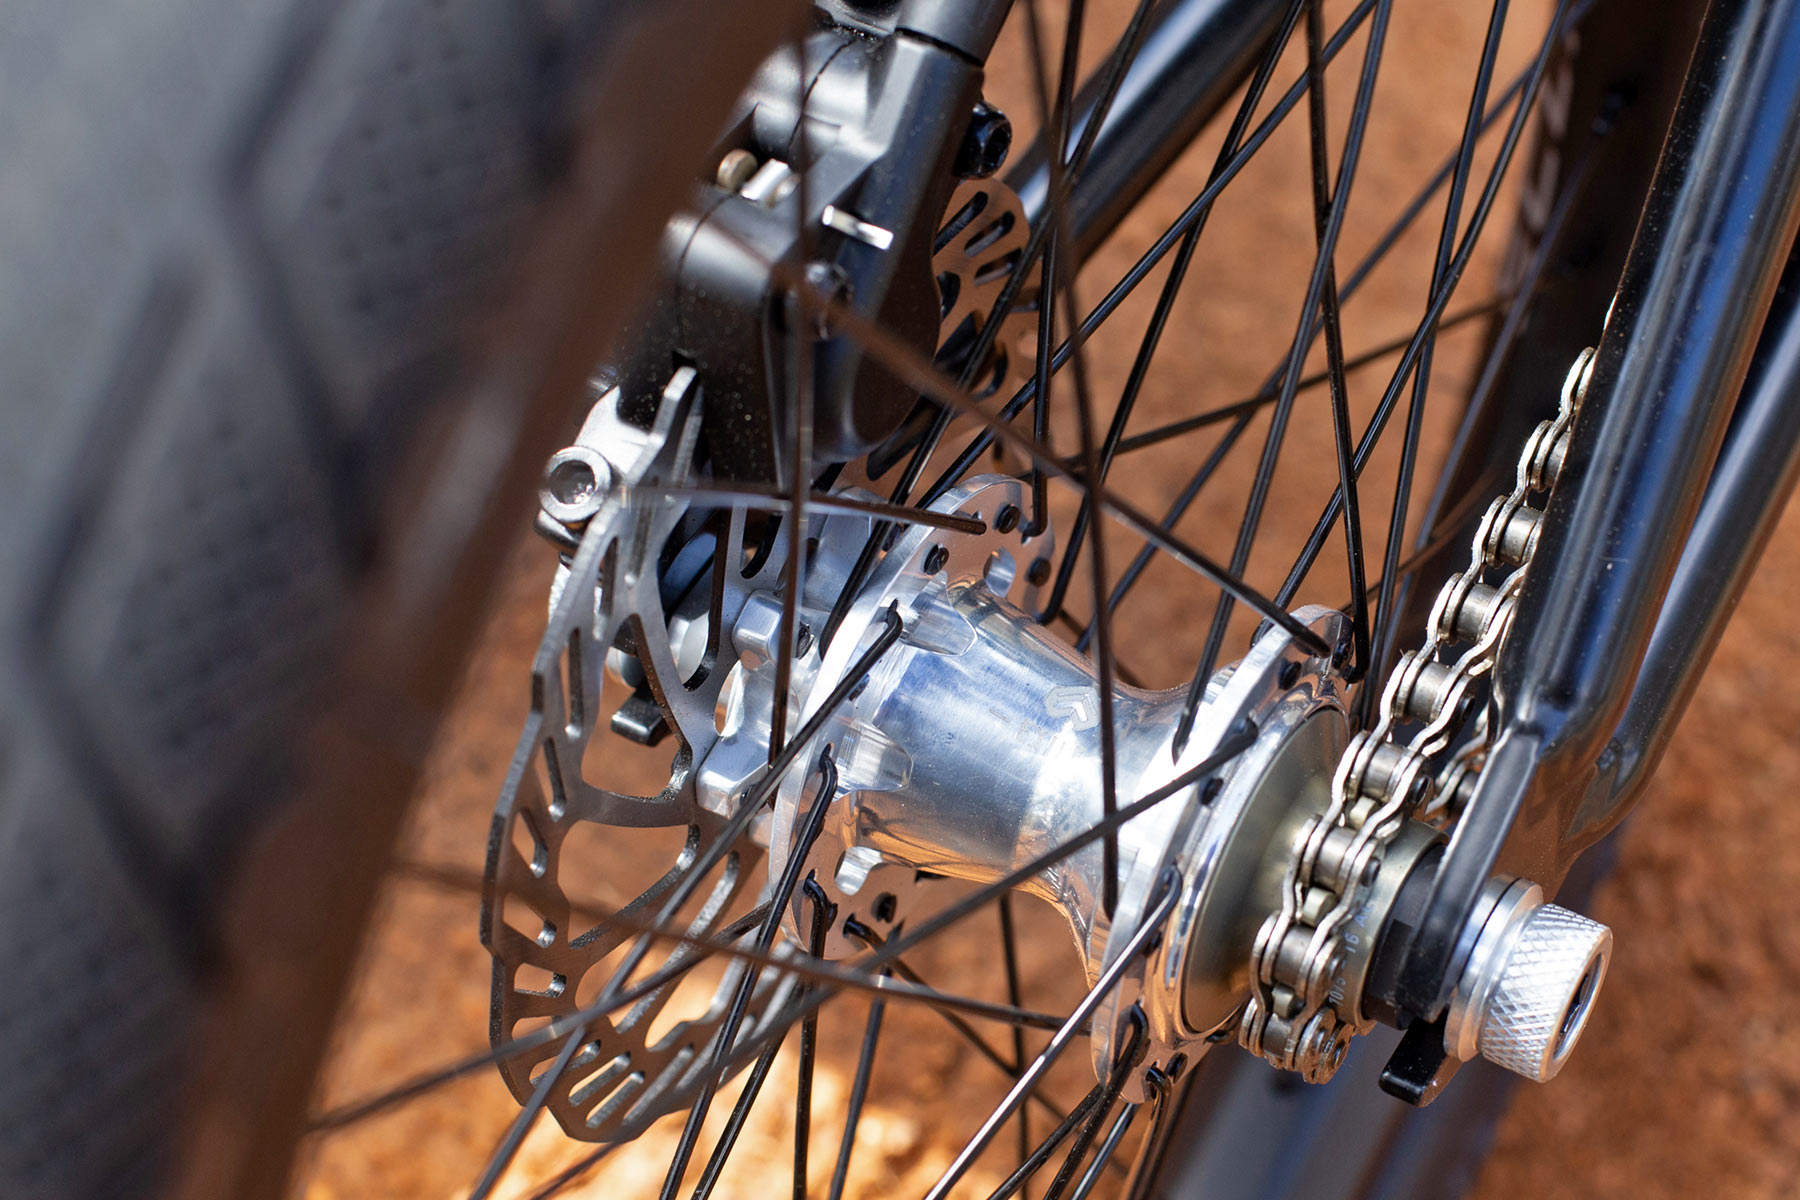 WTP Chaos Machine disc brake BMX bike, Tyson Jones-Peni pro bike check, disc rear hub